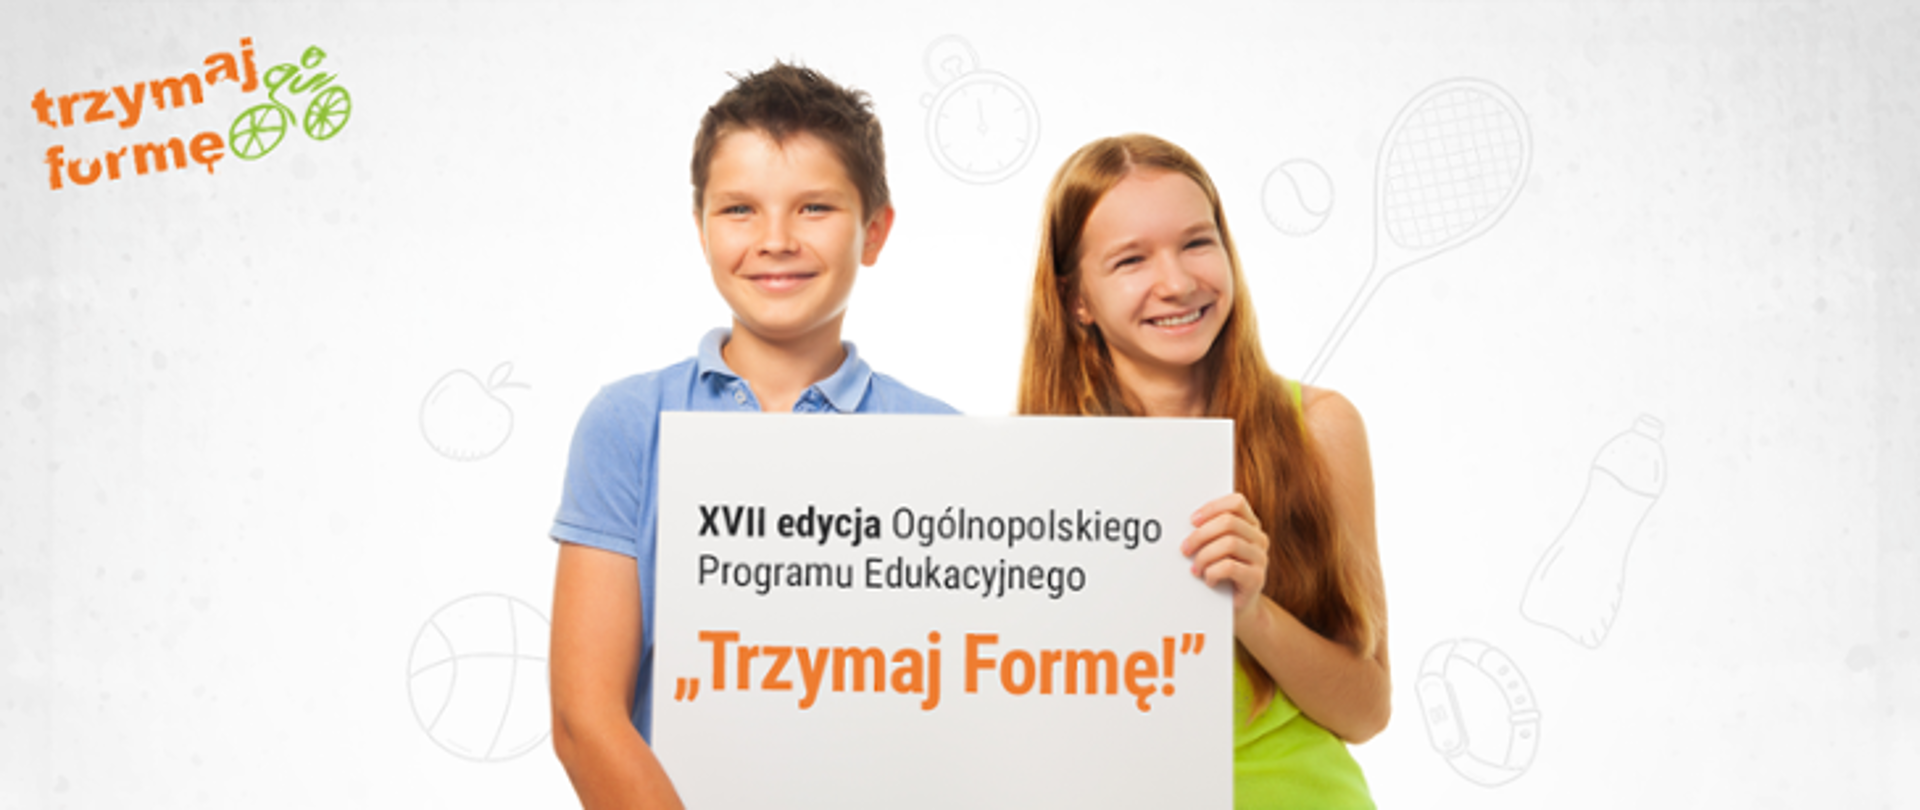 W lewym rogu Logo Trzymaj Formę!, na środku dwoje dzieci w wieku szkolnym - chłopiec i dziewczynka trzymają planszę z napisem "XVII edycja Ogólnopolskiego Programu Edukacyjnego "Trzymaj Formę!""